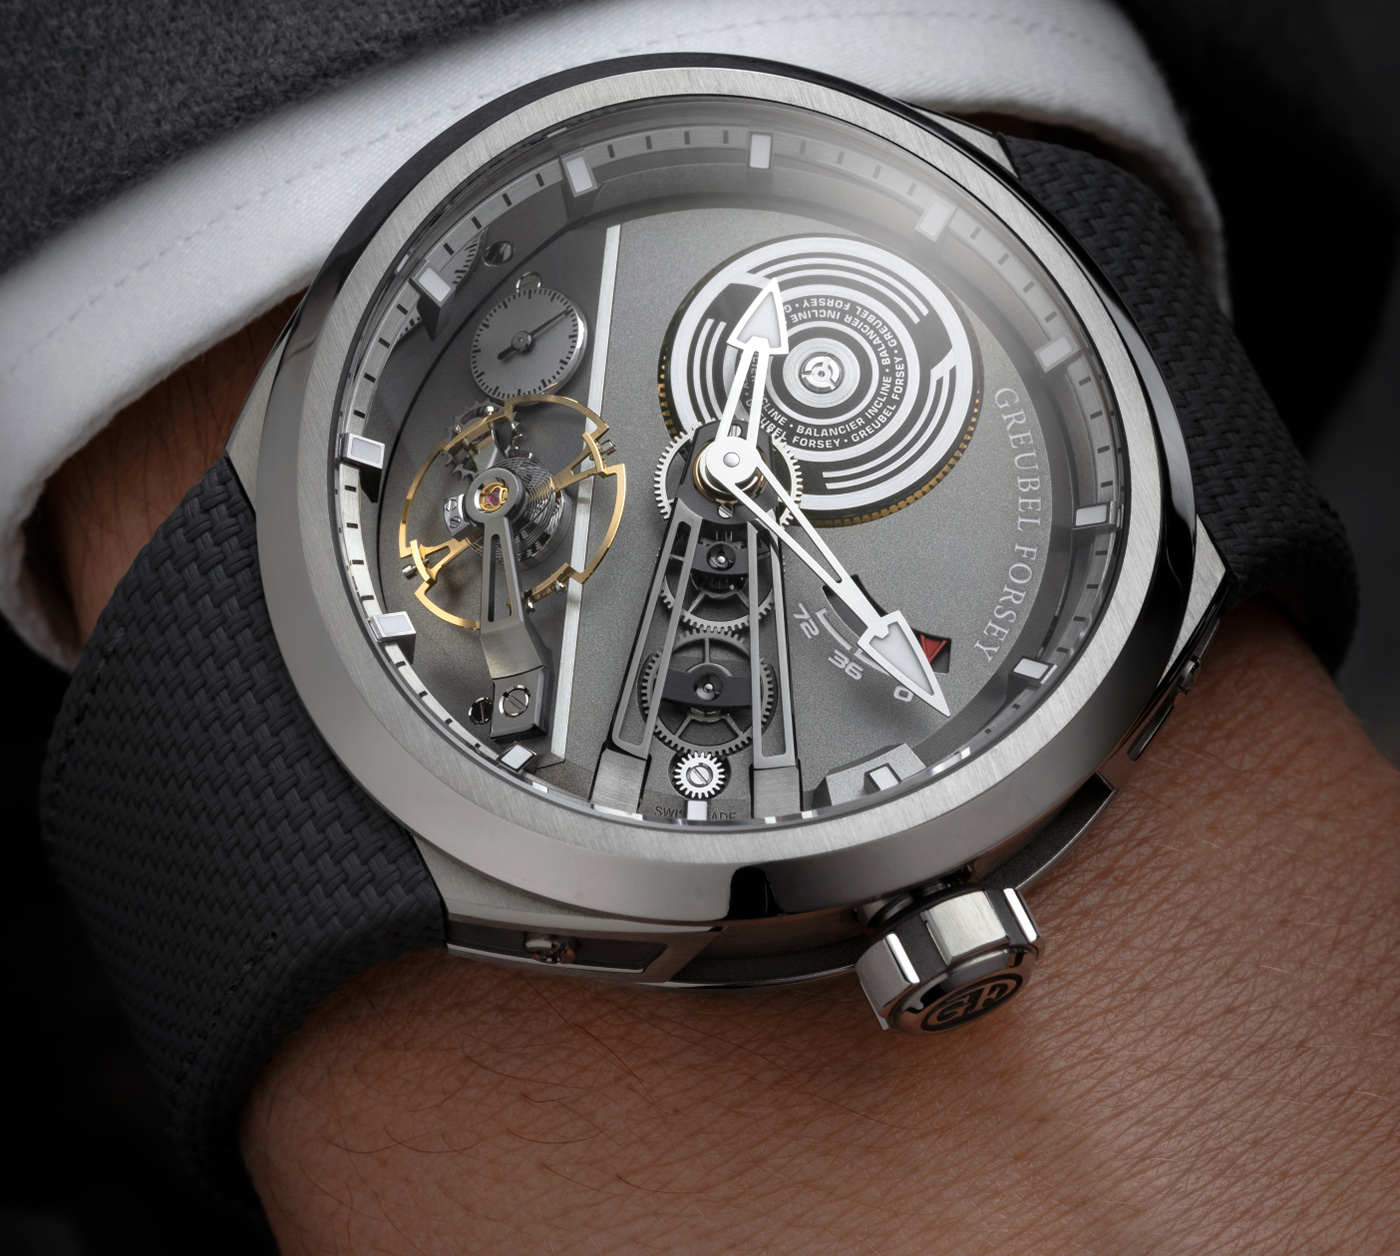 Greubel Forsey Limited Edition Balancier S2 Watch